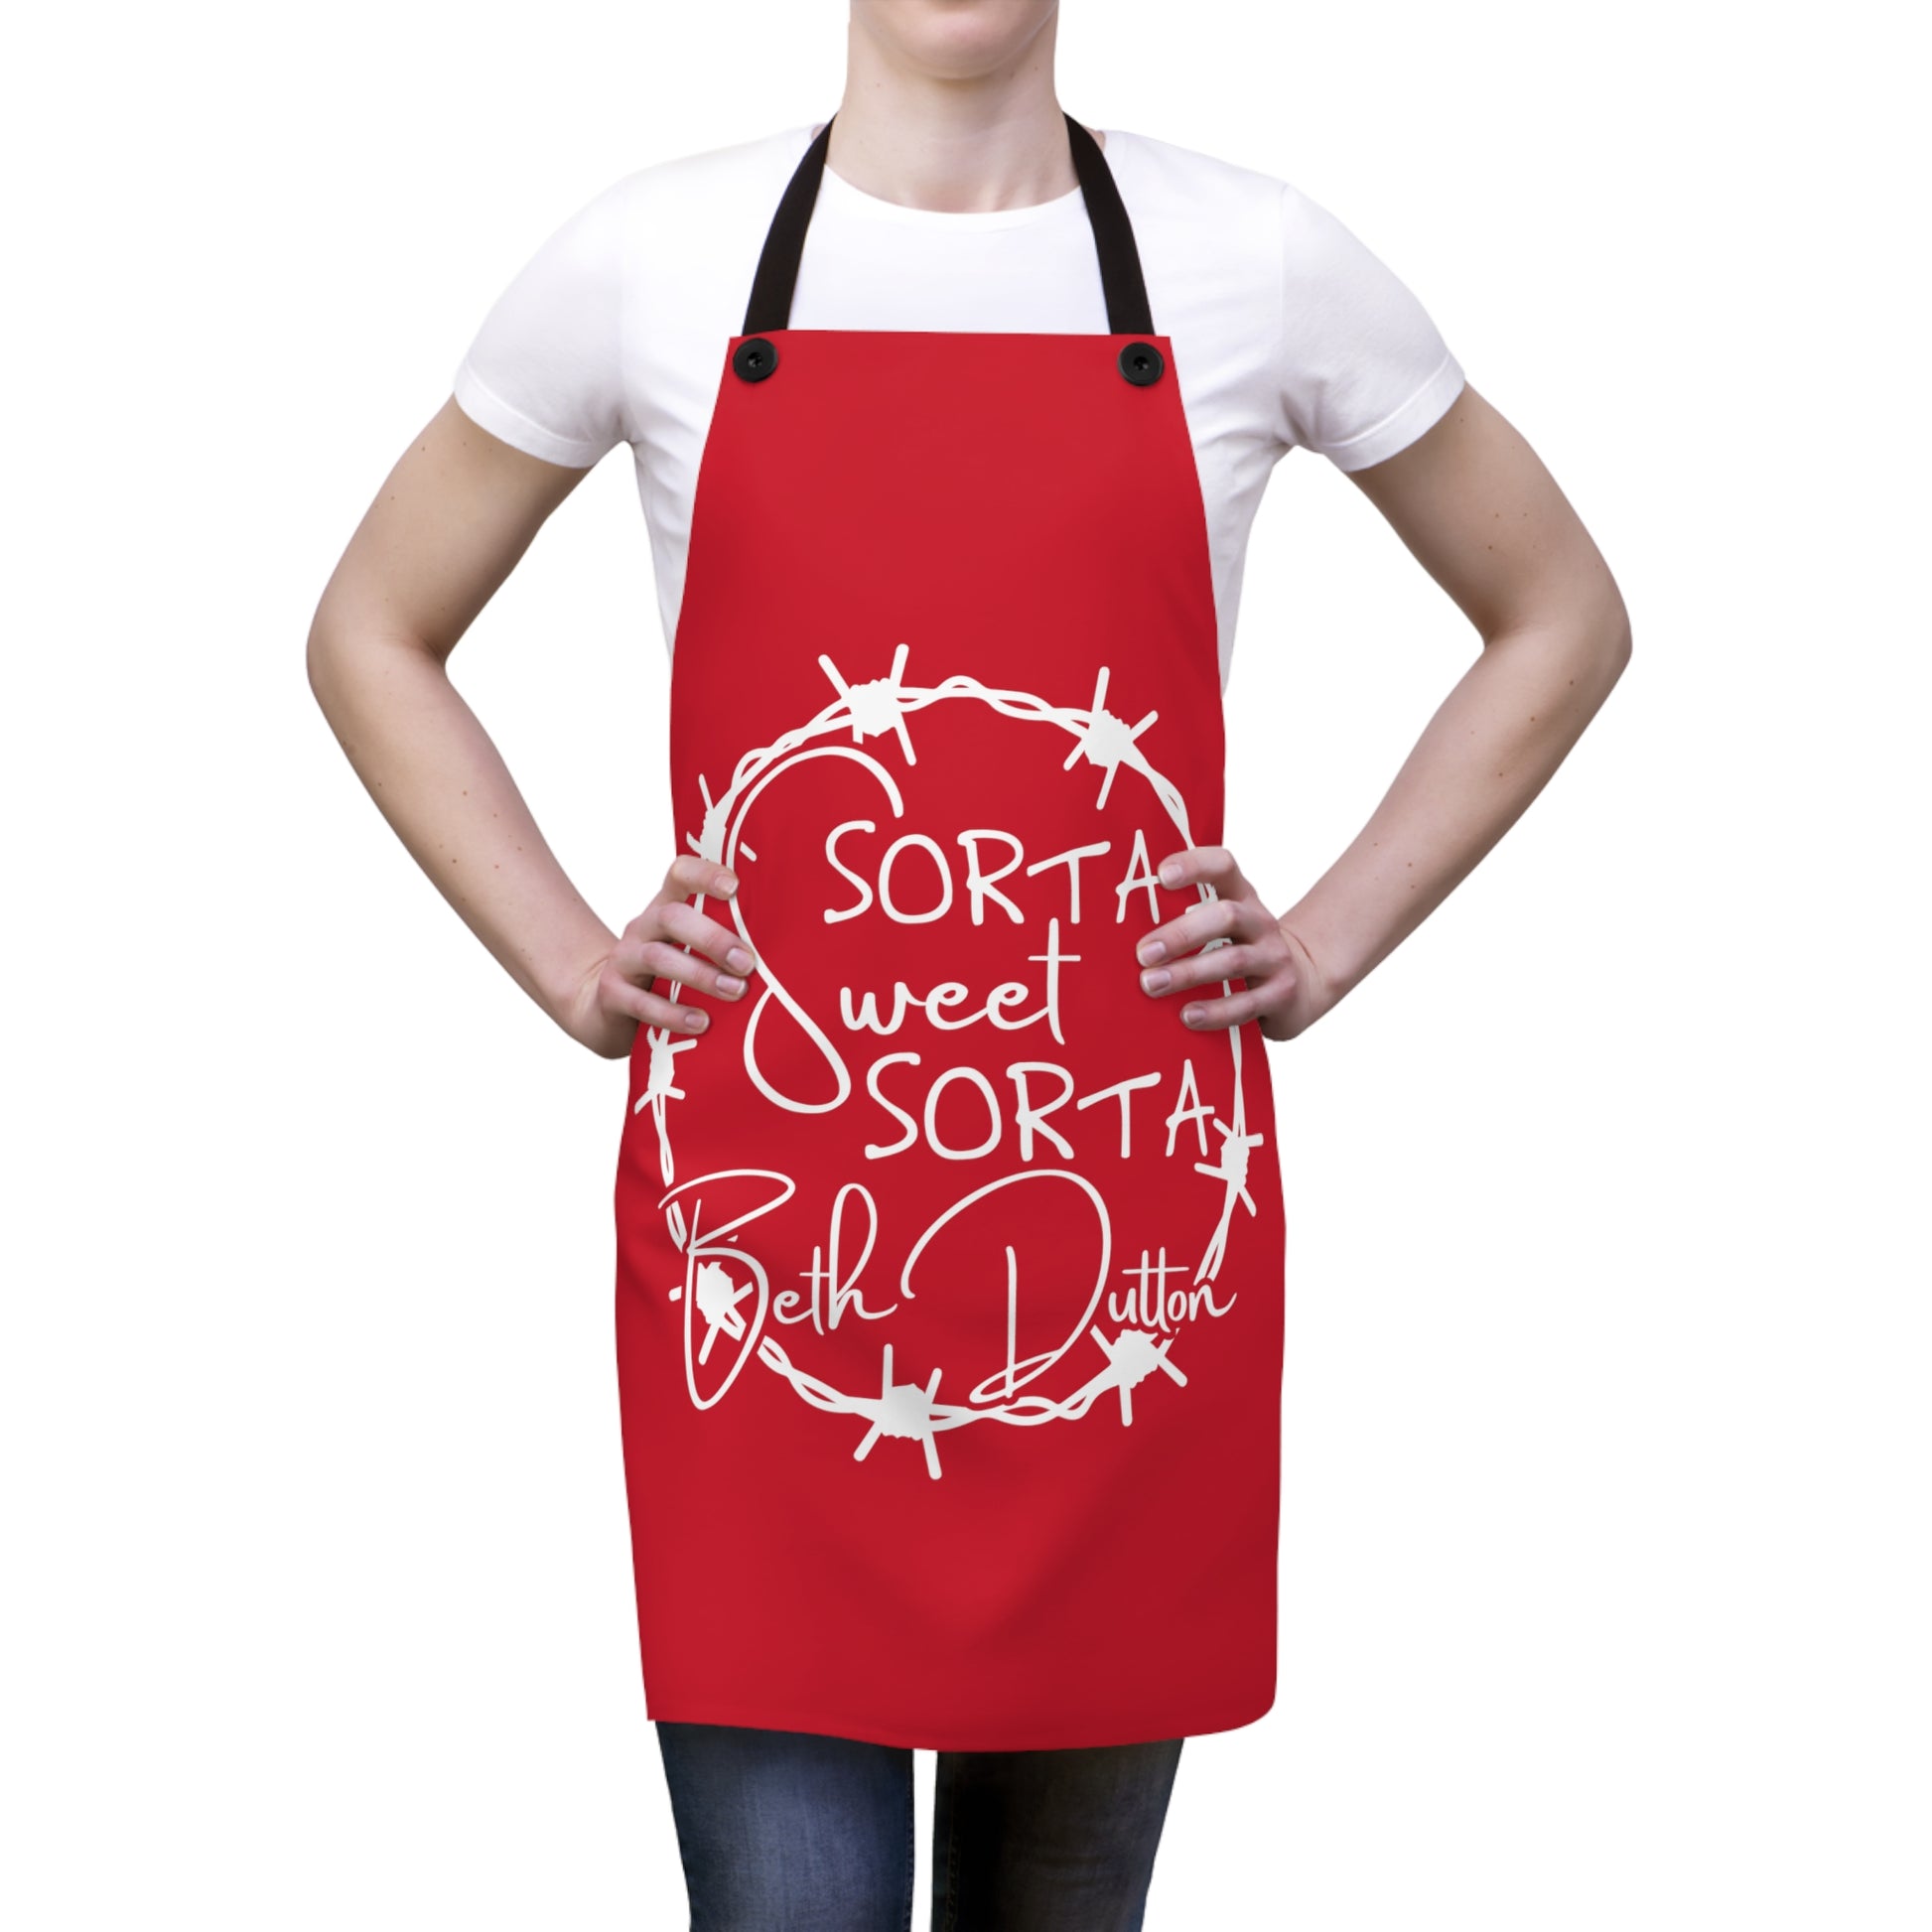 Sorta Sweet Sort Beth Dutton apron on women